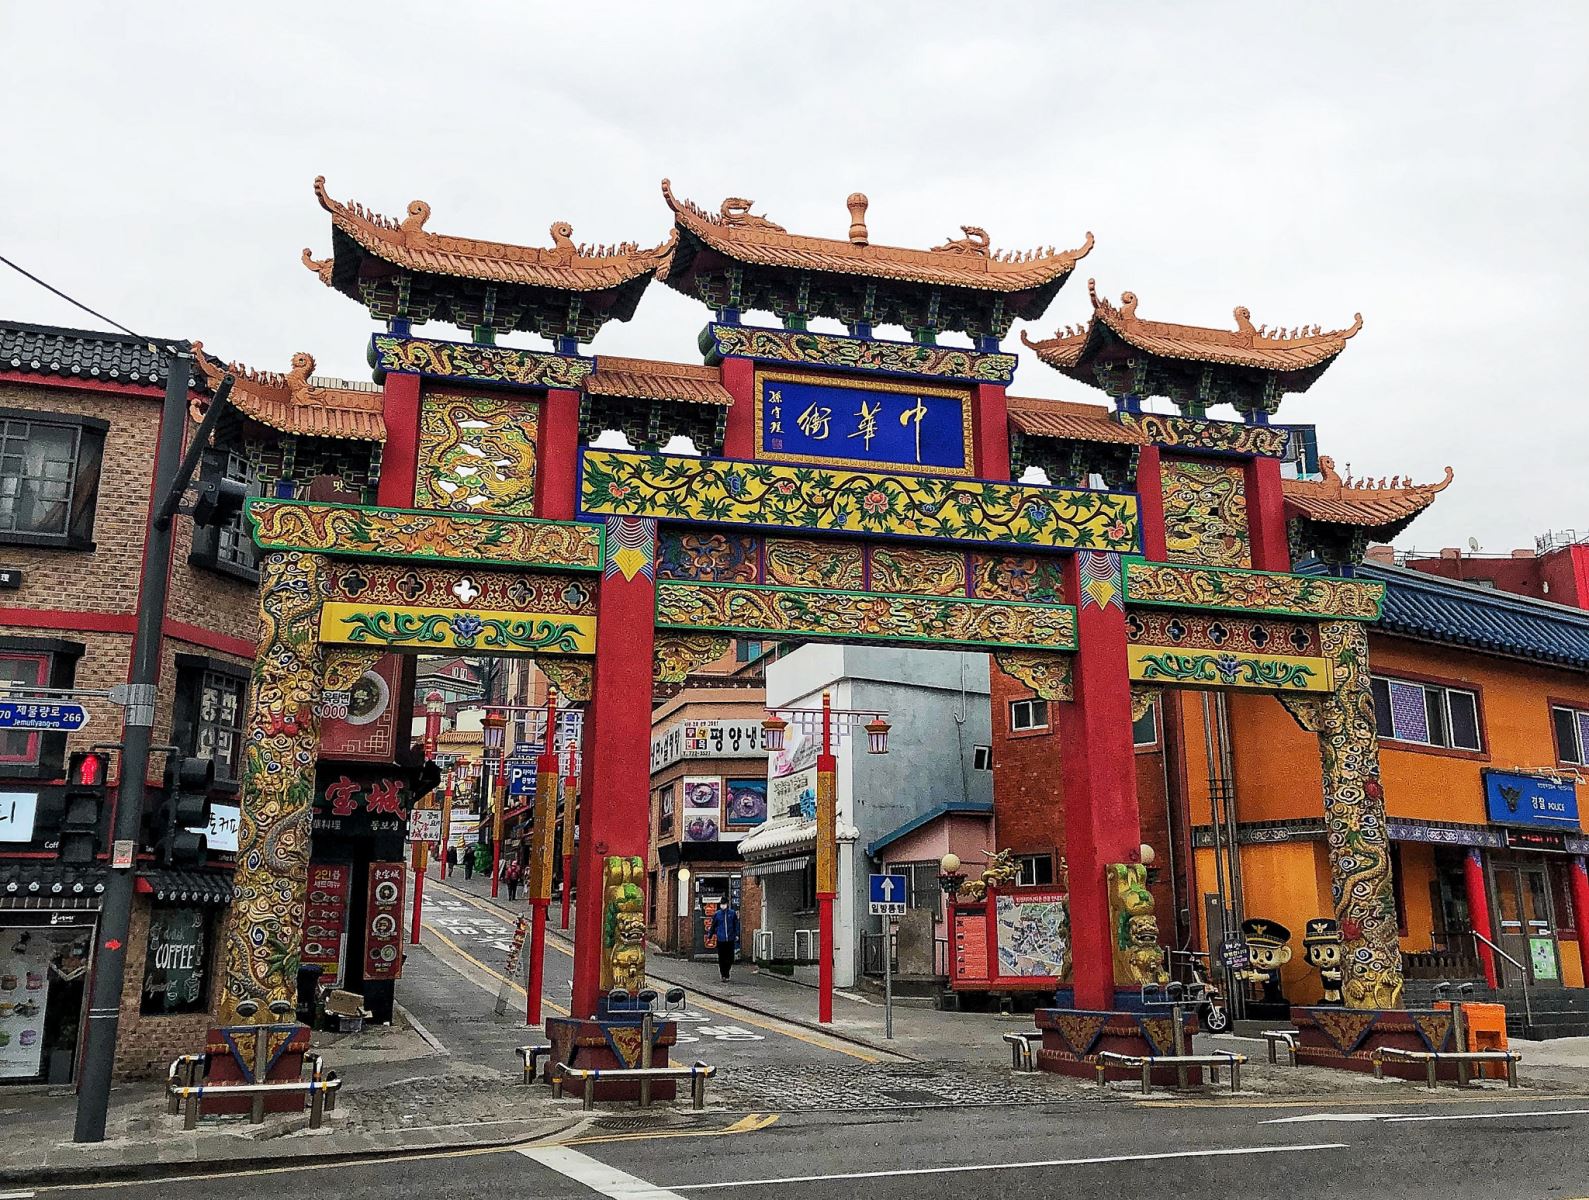 Nhìn thấy chiếc cổng này là bạn đã tìm thấy khu phố Chinatown ở Incheon rồi đó!